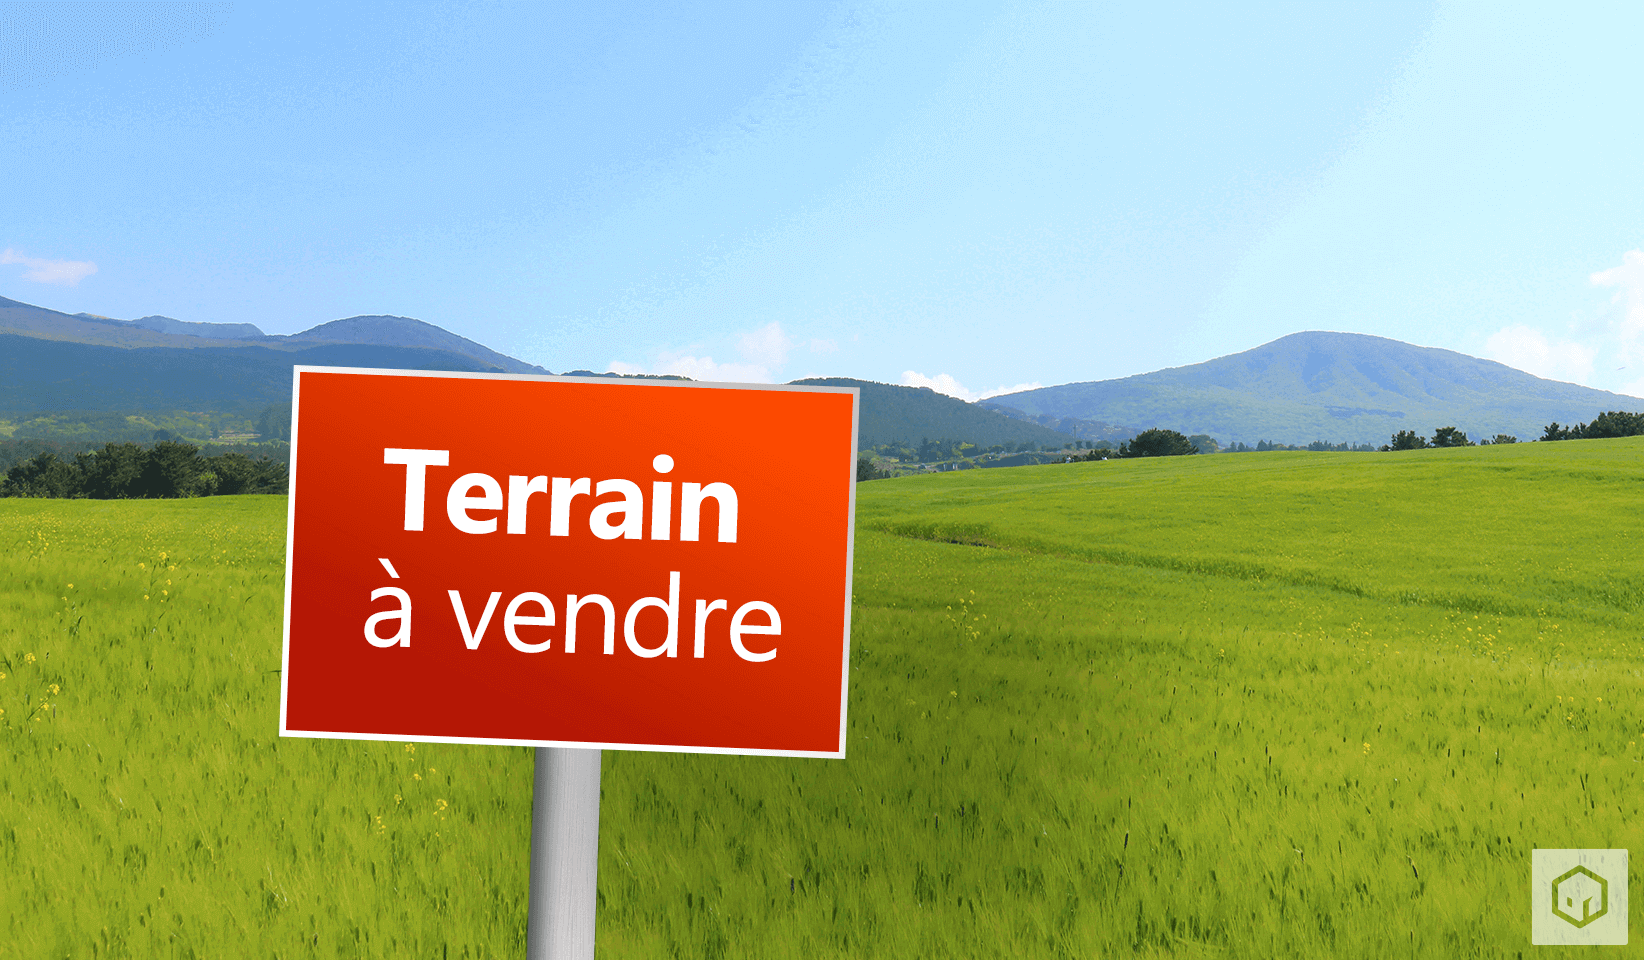 Terrain à vendre 617.00m² à Trévérien - Photo 1